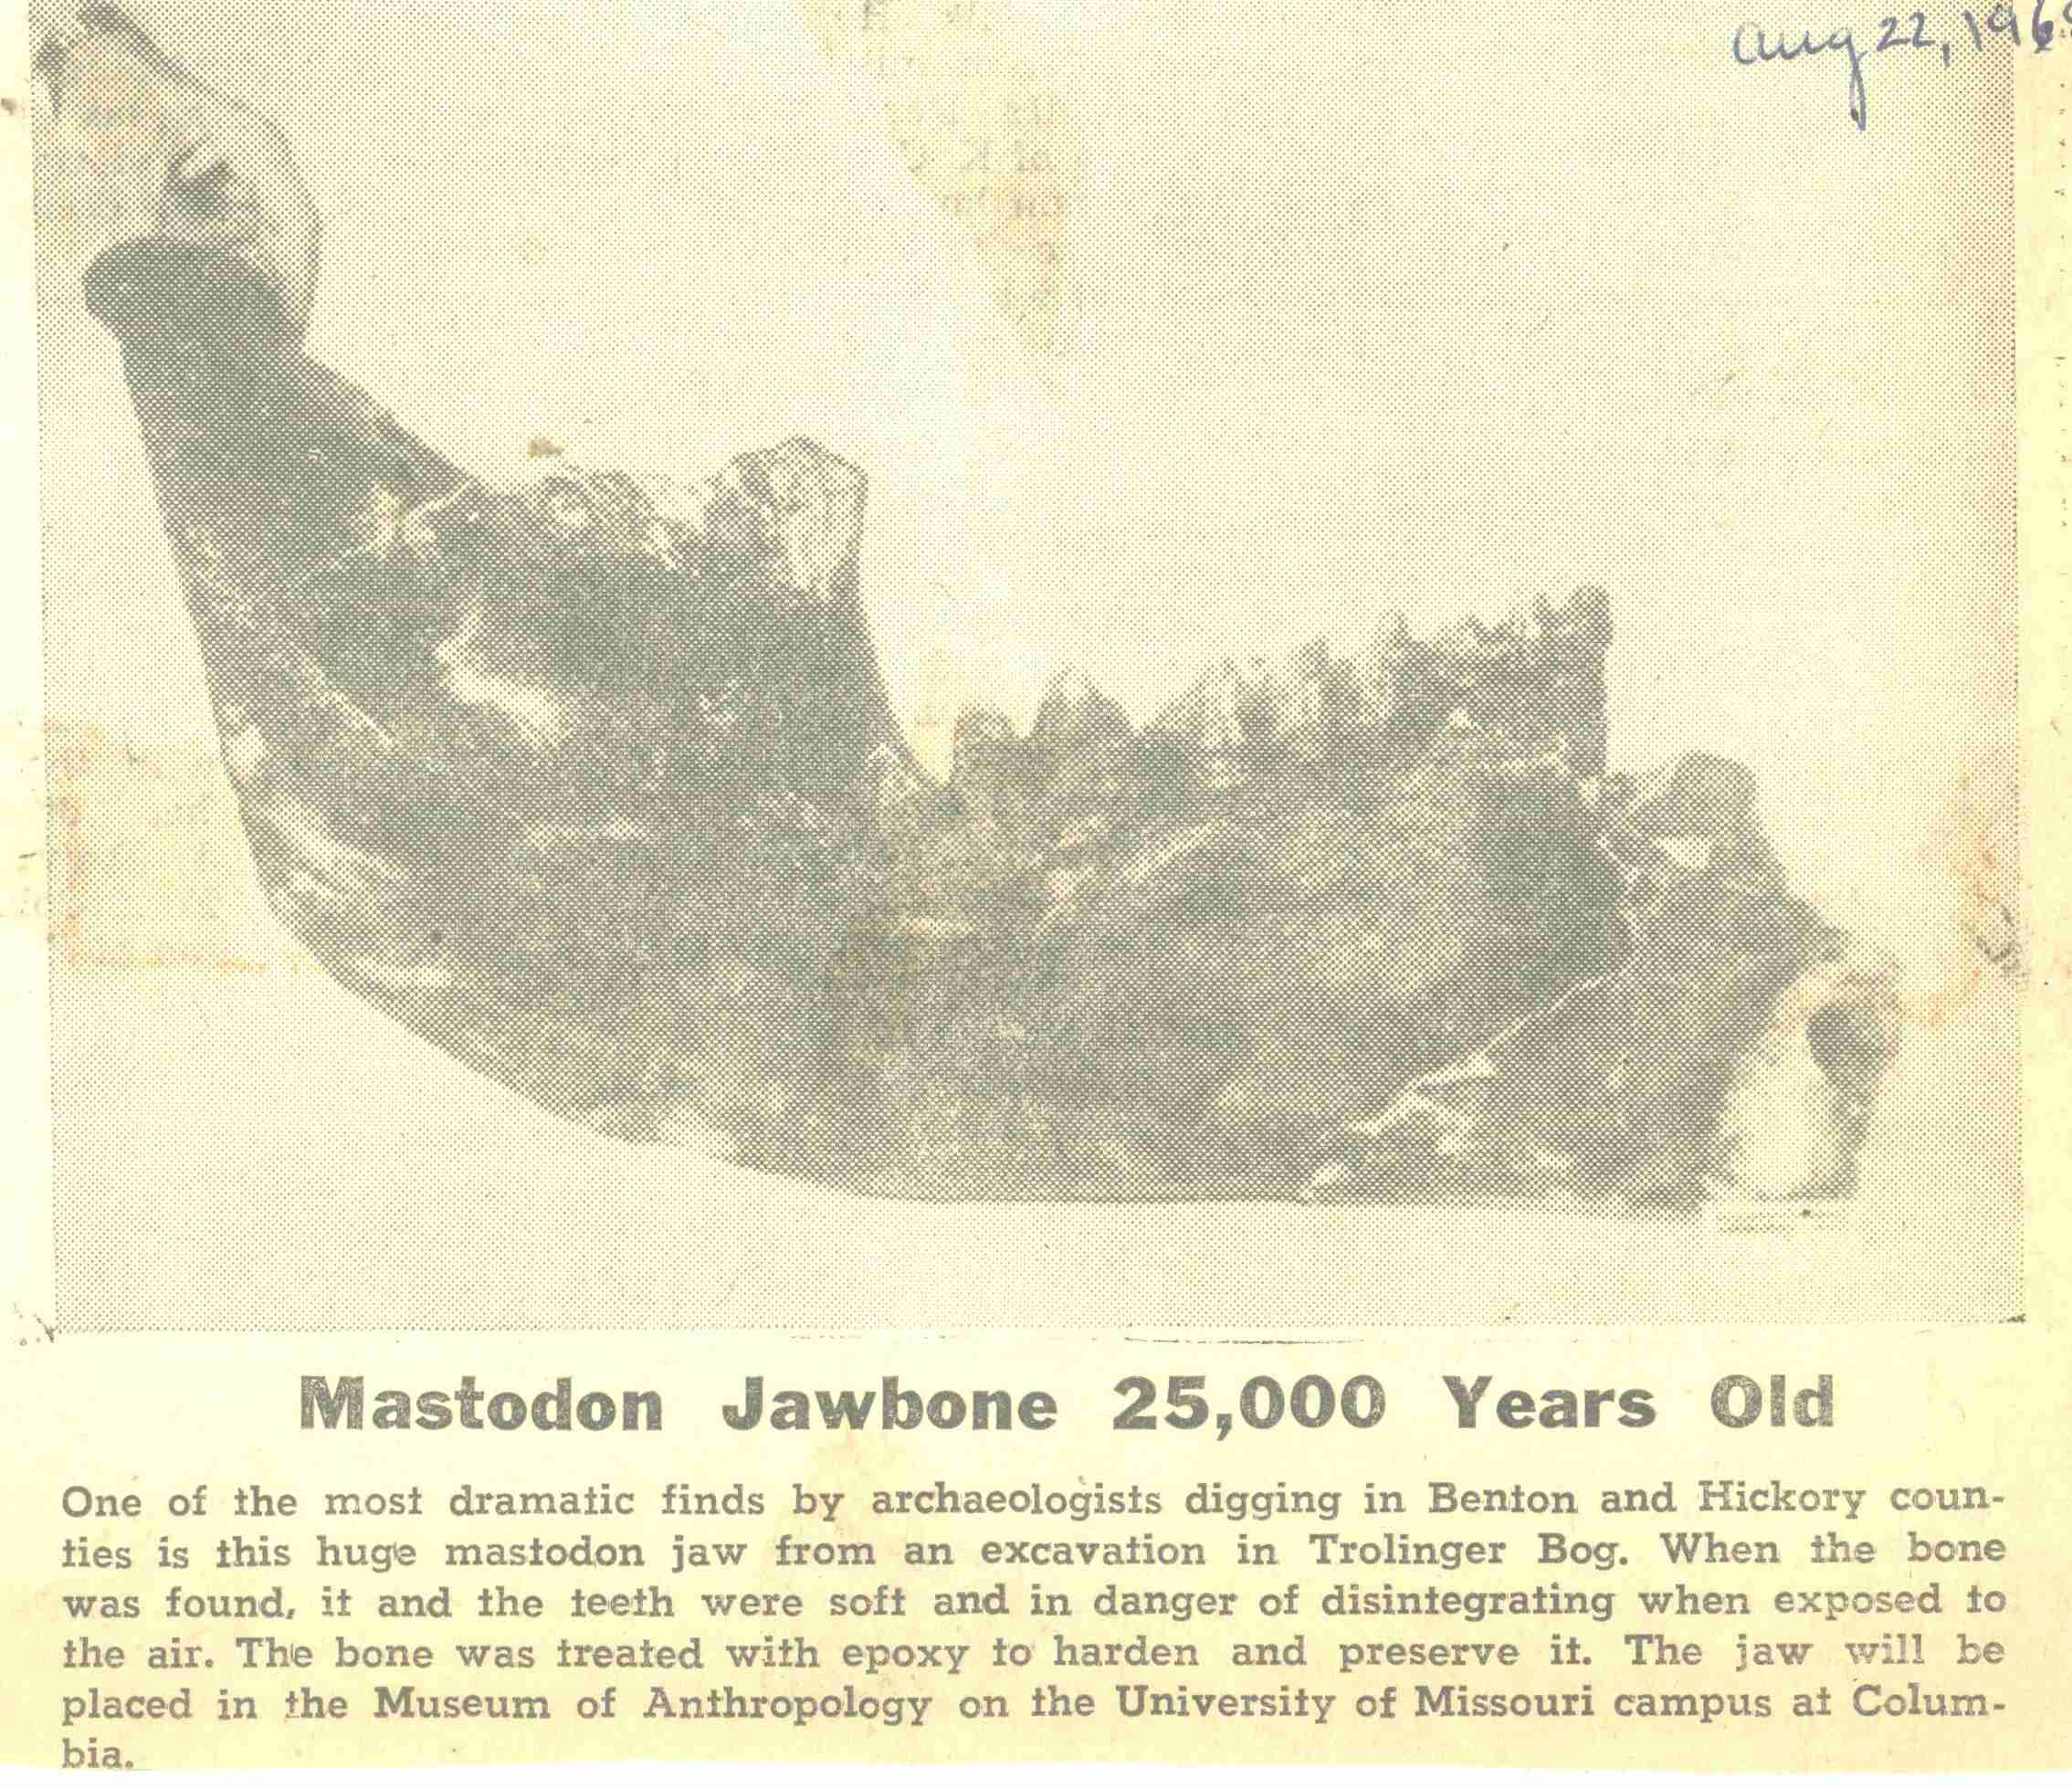 Lower jaw bone from American Mastodon.
